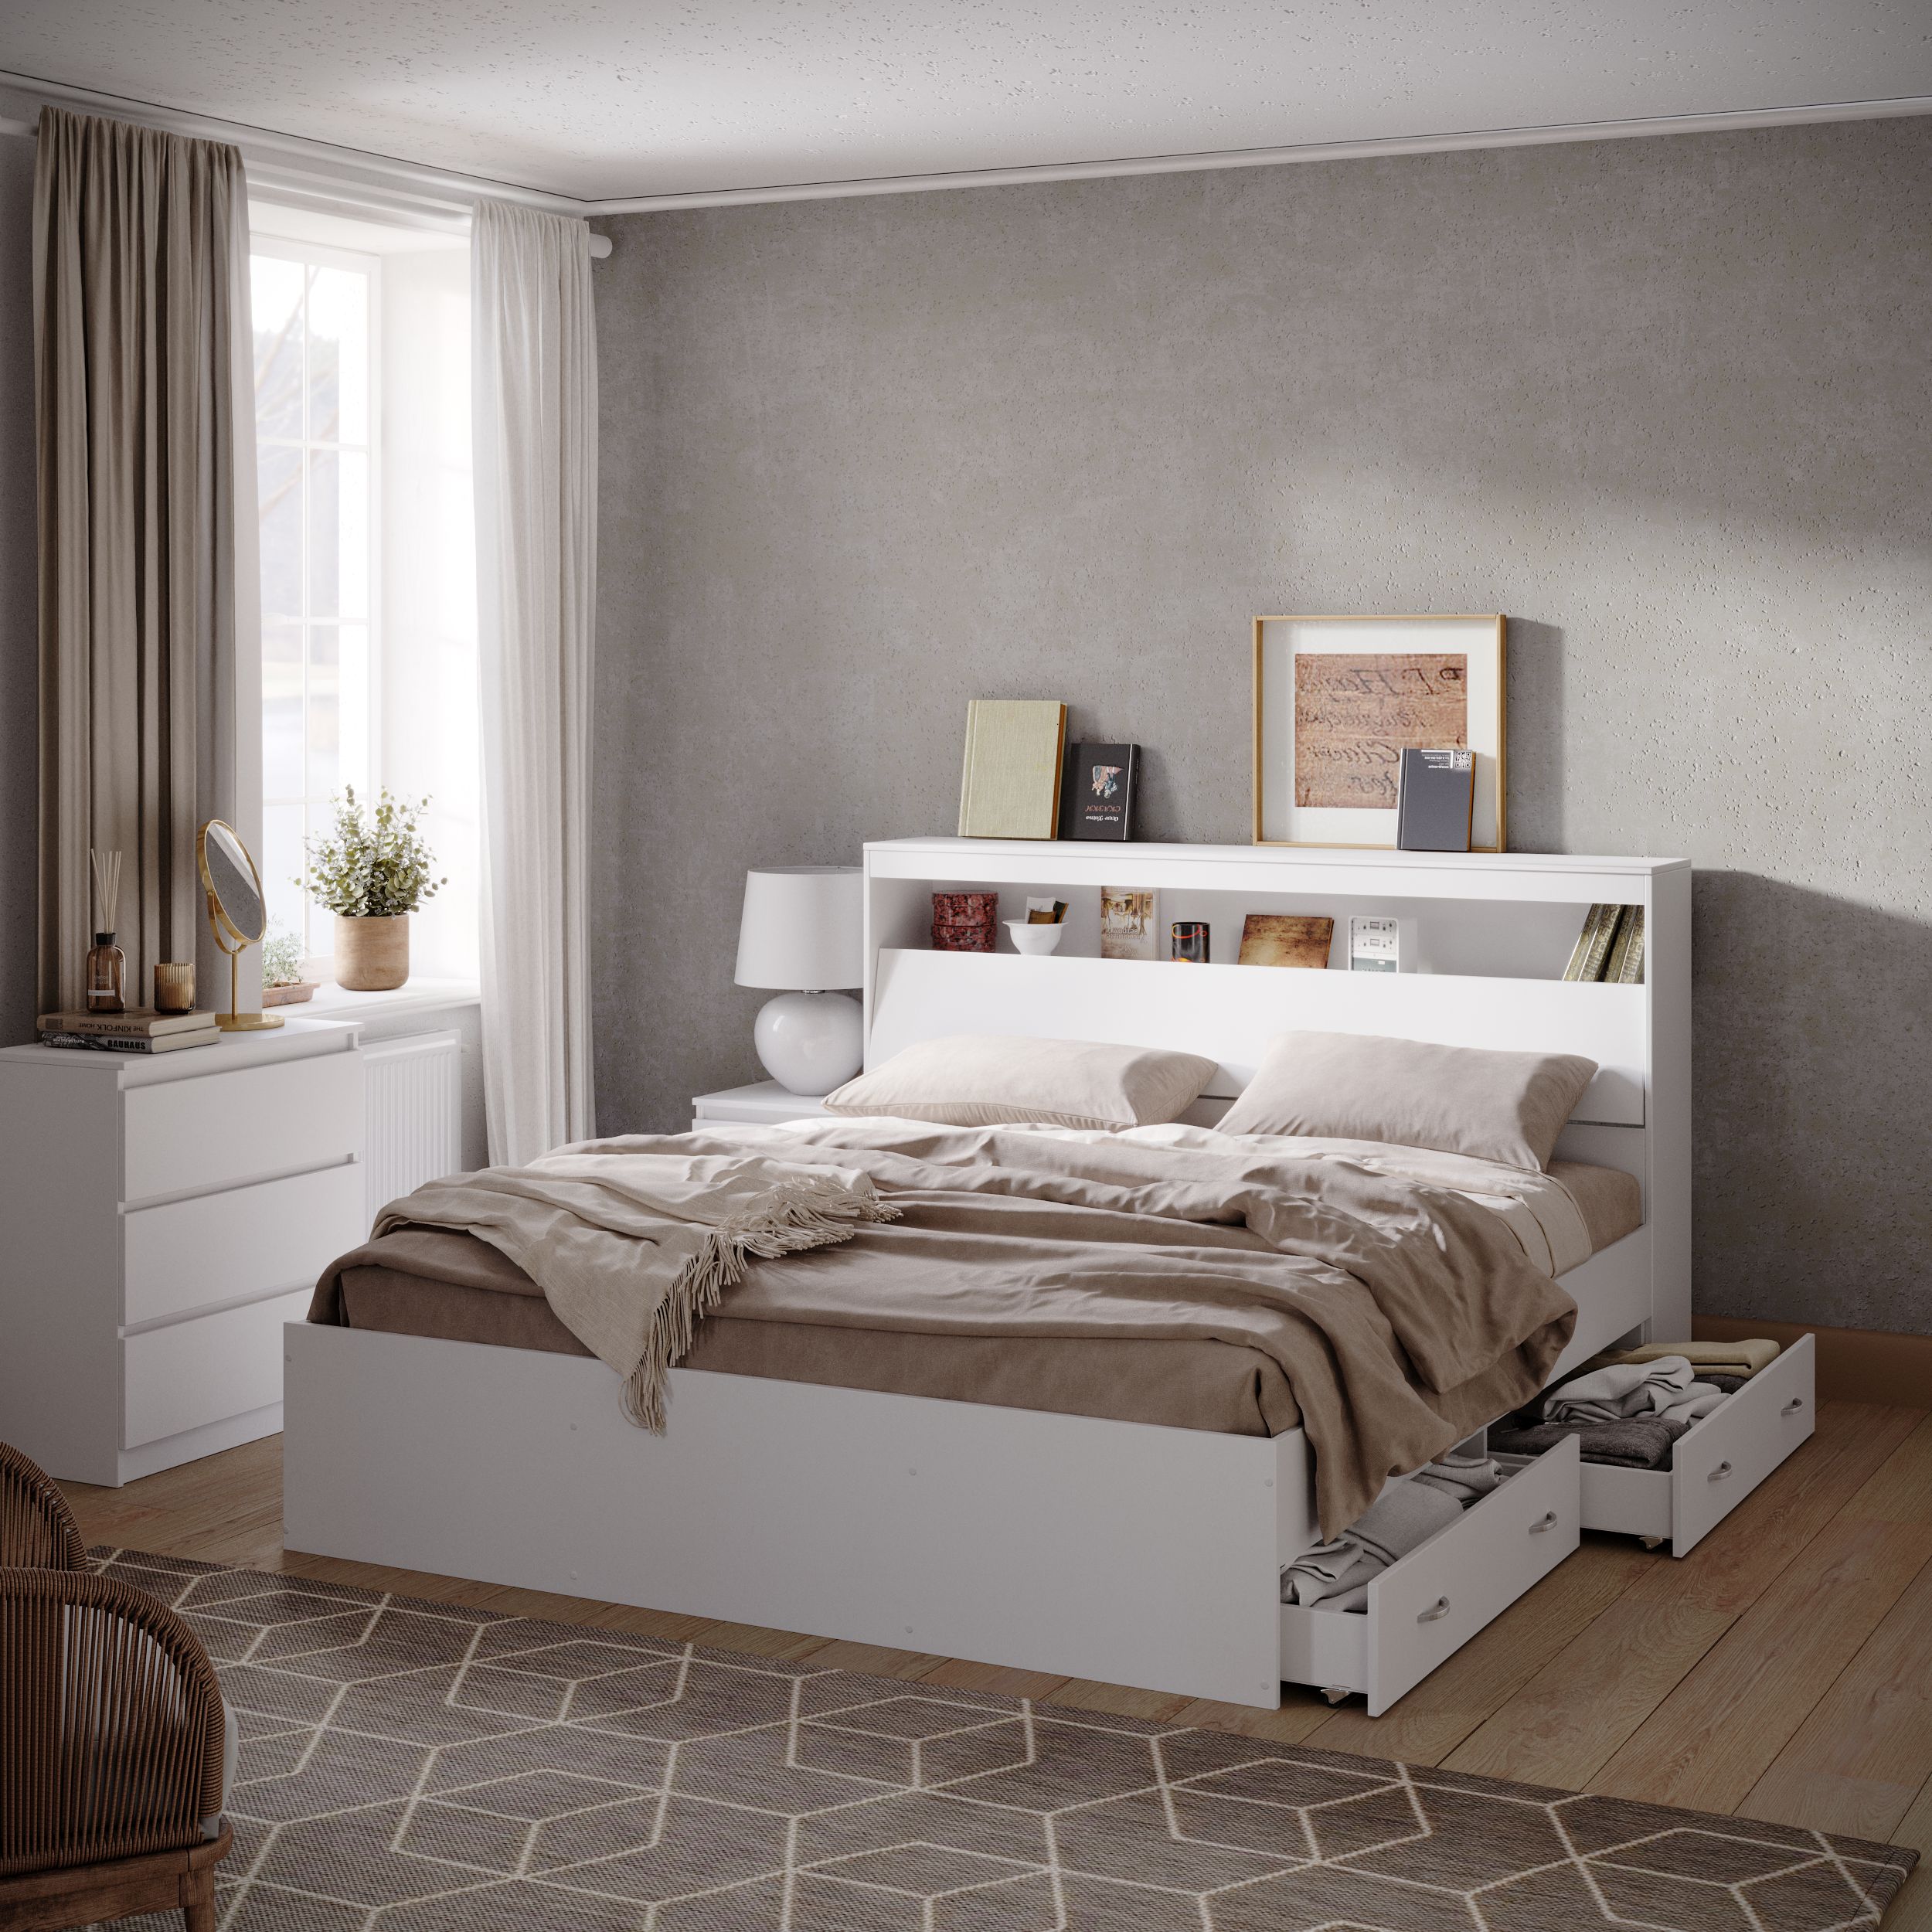 Обзор двуспальной кровати с выдвижными ящиками. Приятная простота конструкции